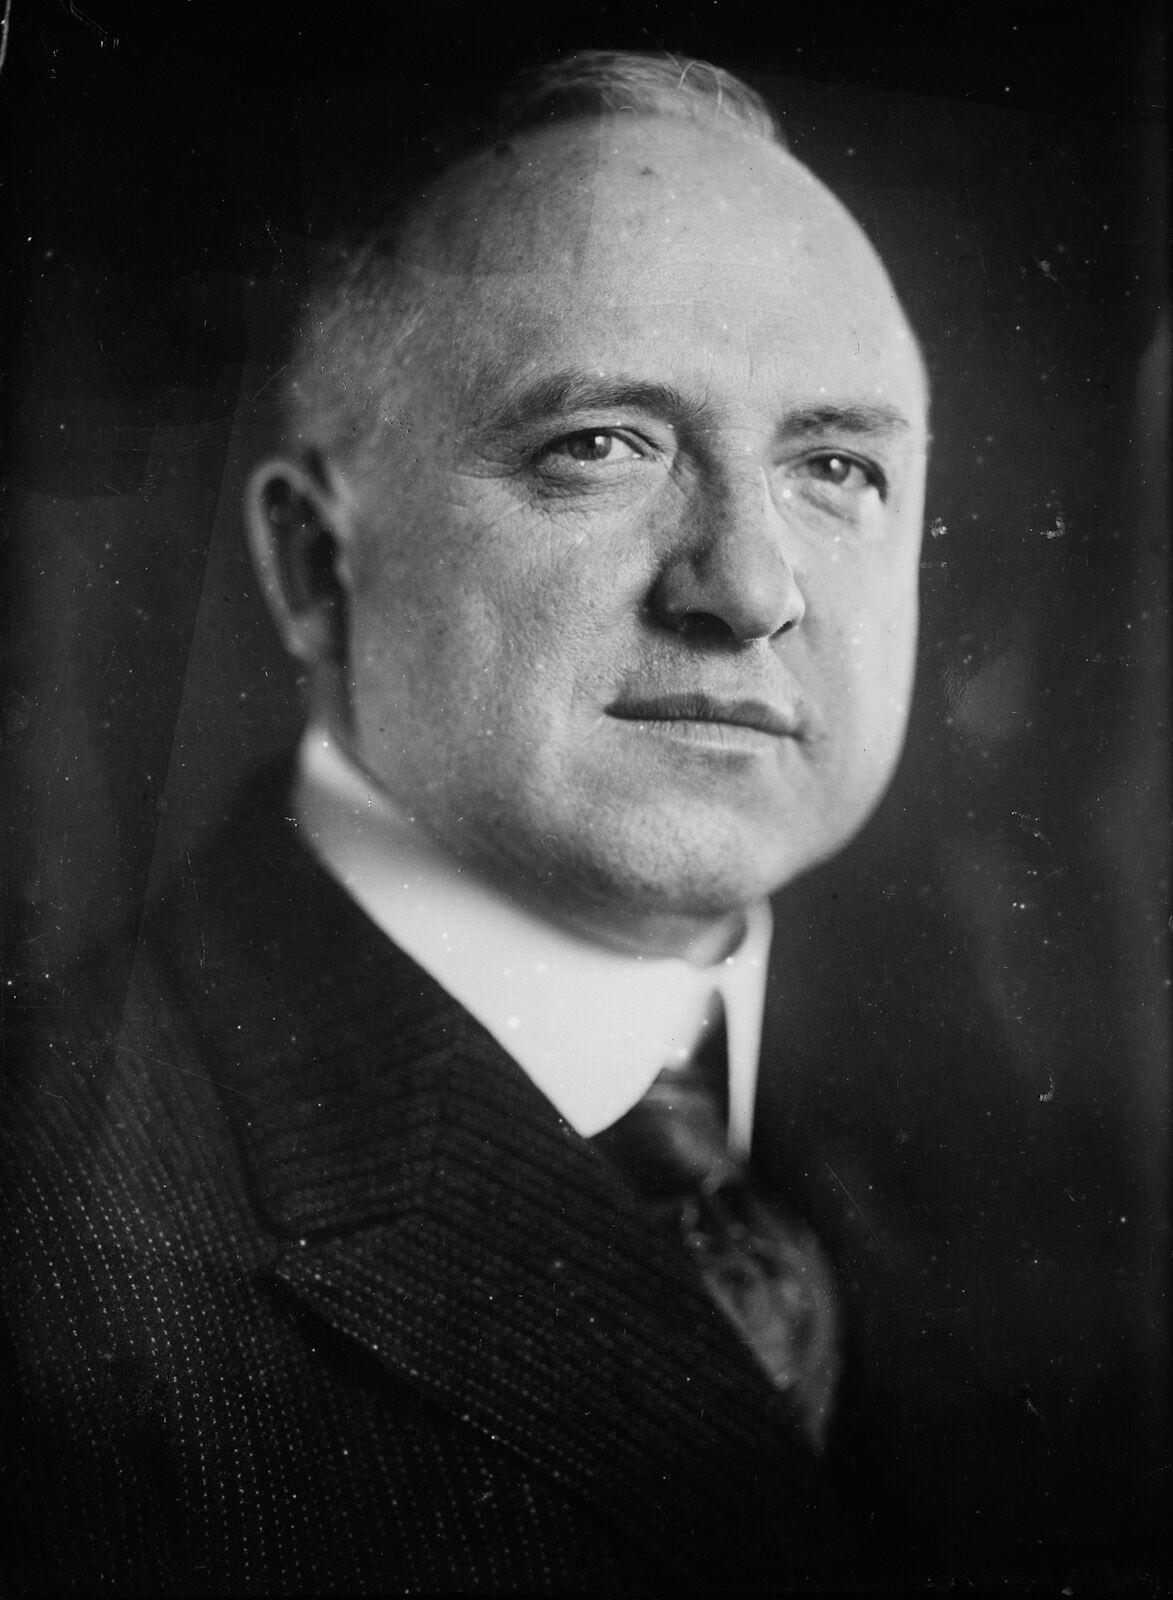 H. C. Ogden